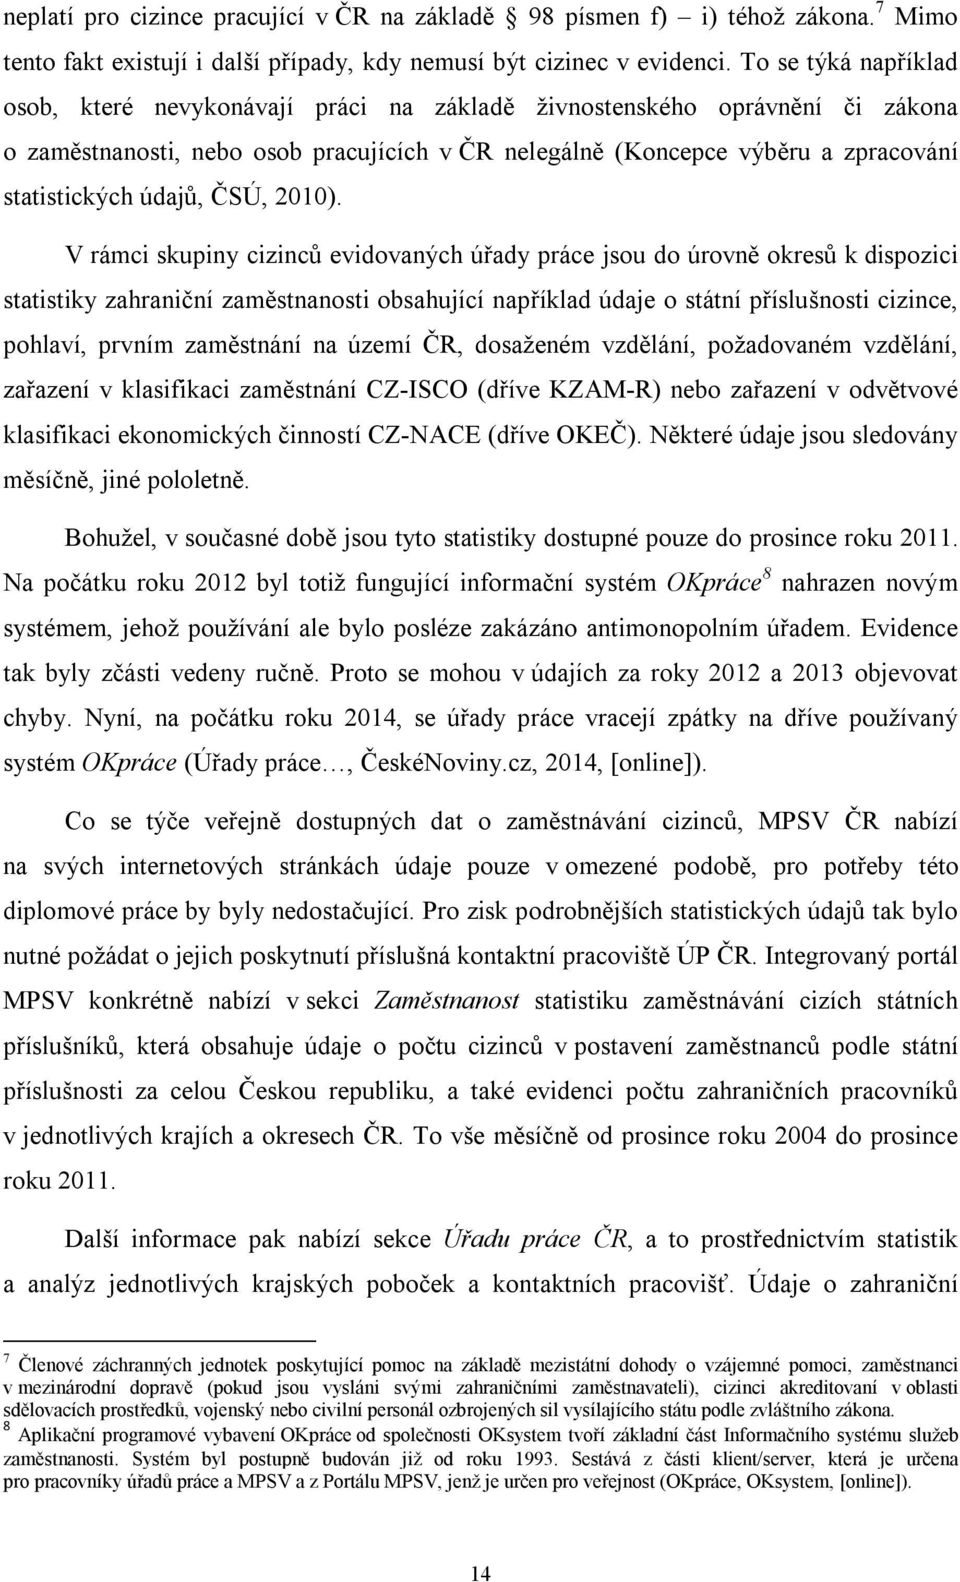 údajů, ČSÚ, 2010).